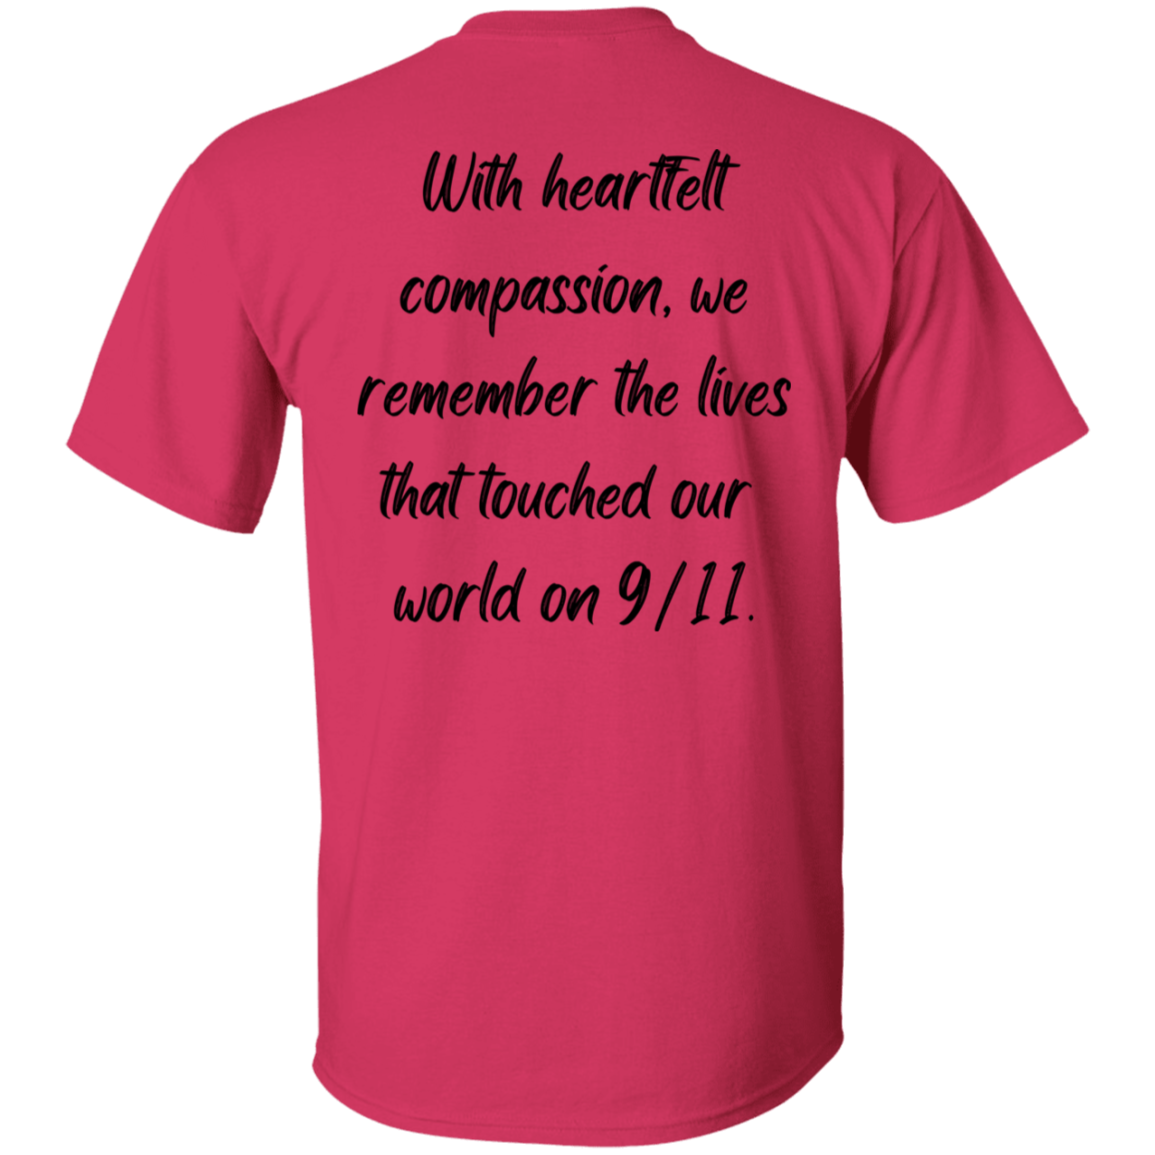 Recuerde siempre, honrando las vidas - Camiseta unisex para hombre y mujer